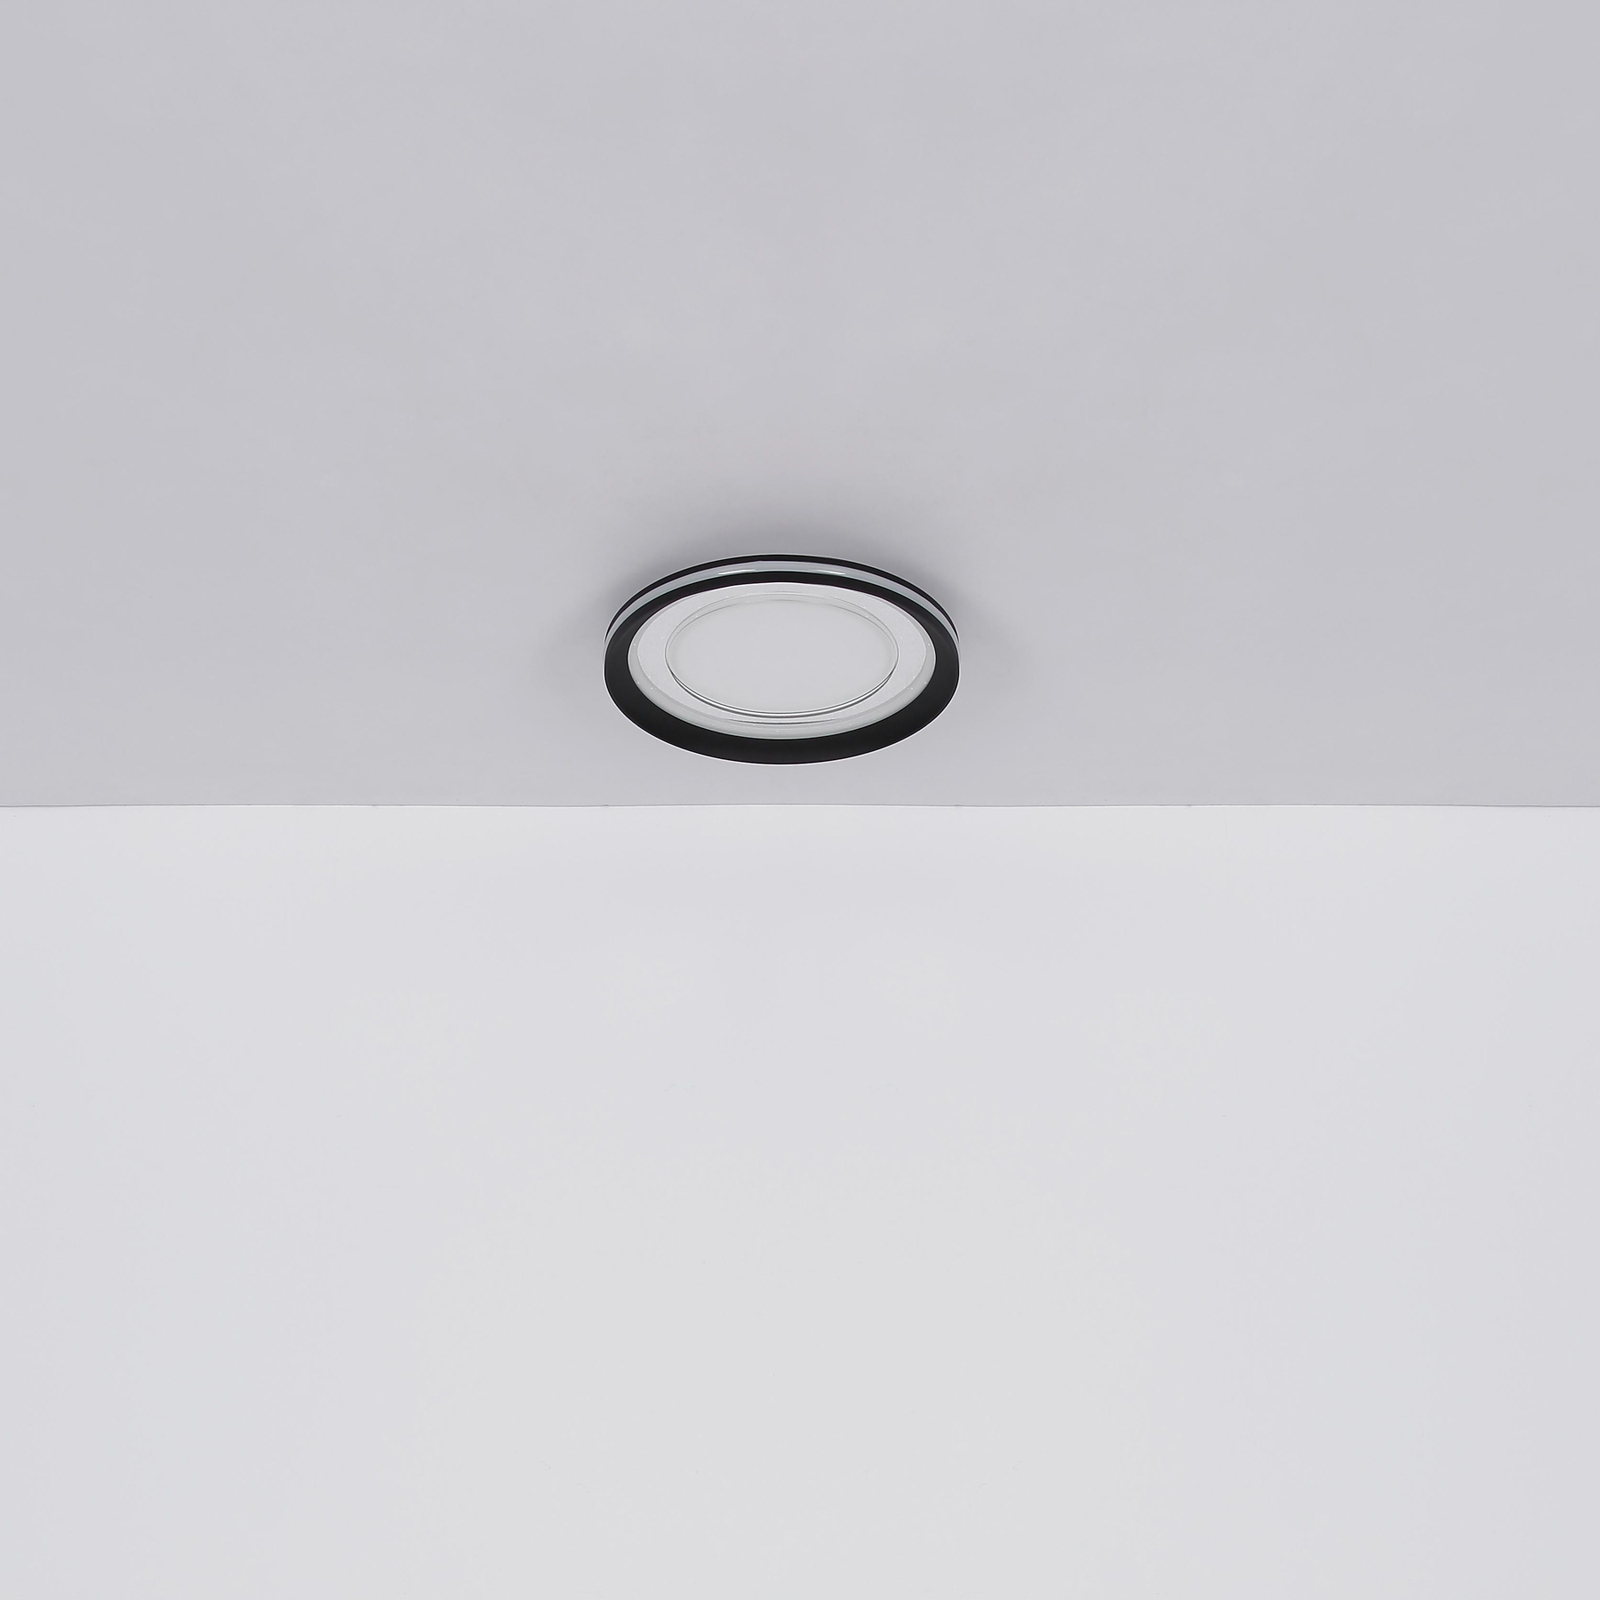 LED-Deckenleuchte Clarino, Ø 36 cm, schwarz/weiß, Acryl